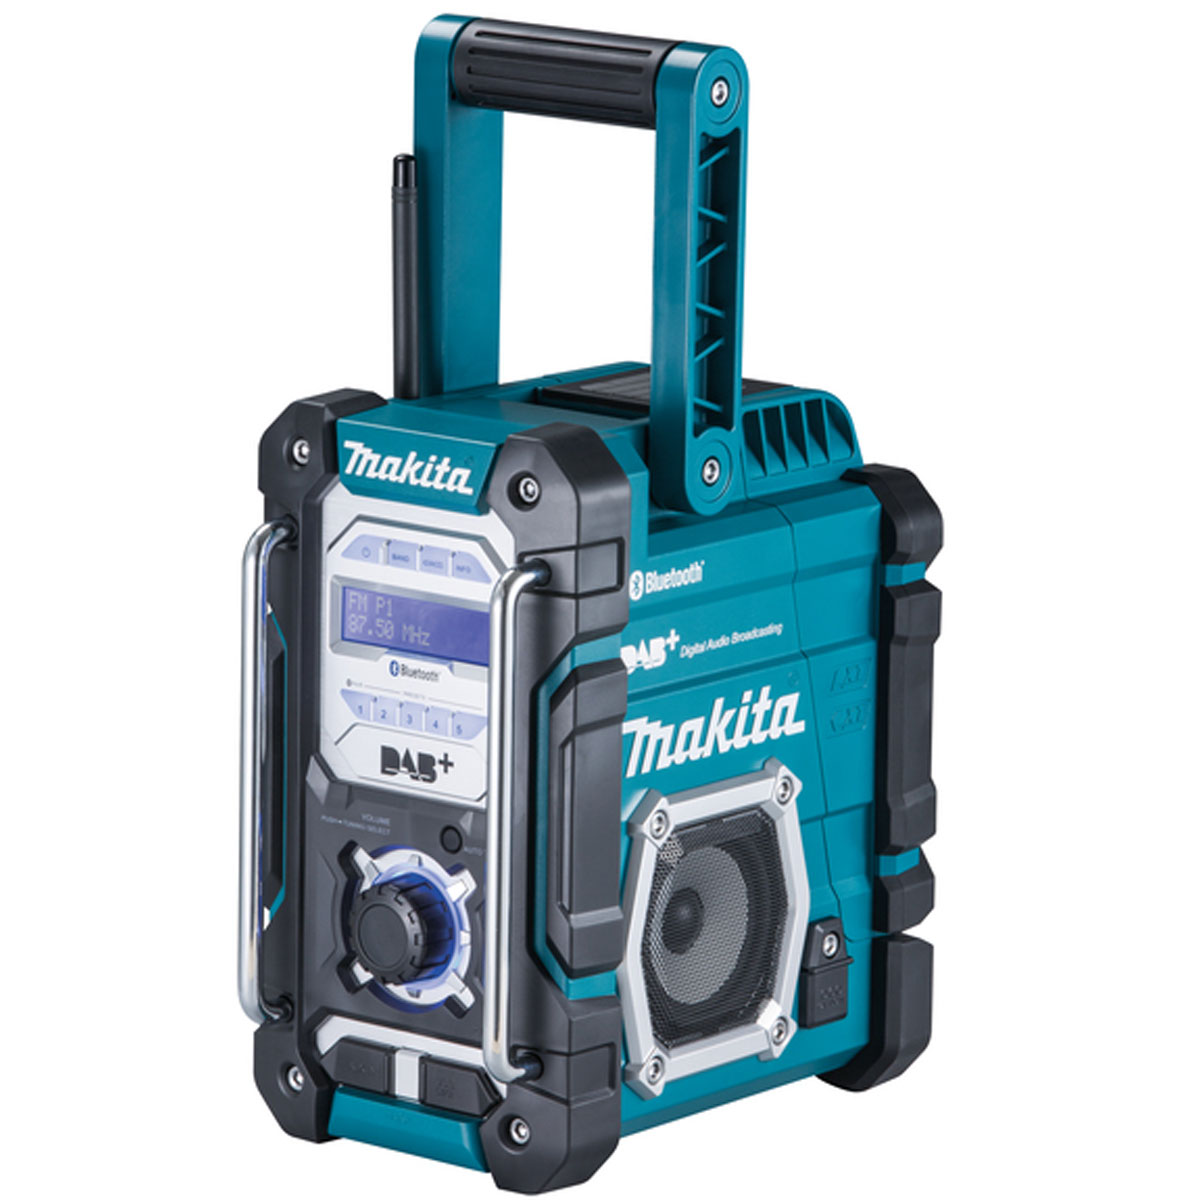 Makita Akku-Baustellenradio DMR112 Radio FM, DAB Plus, Bluetooth, ohne Akku und Ladegerät